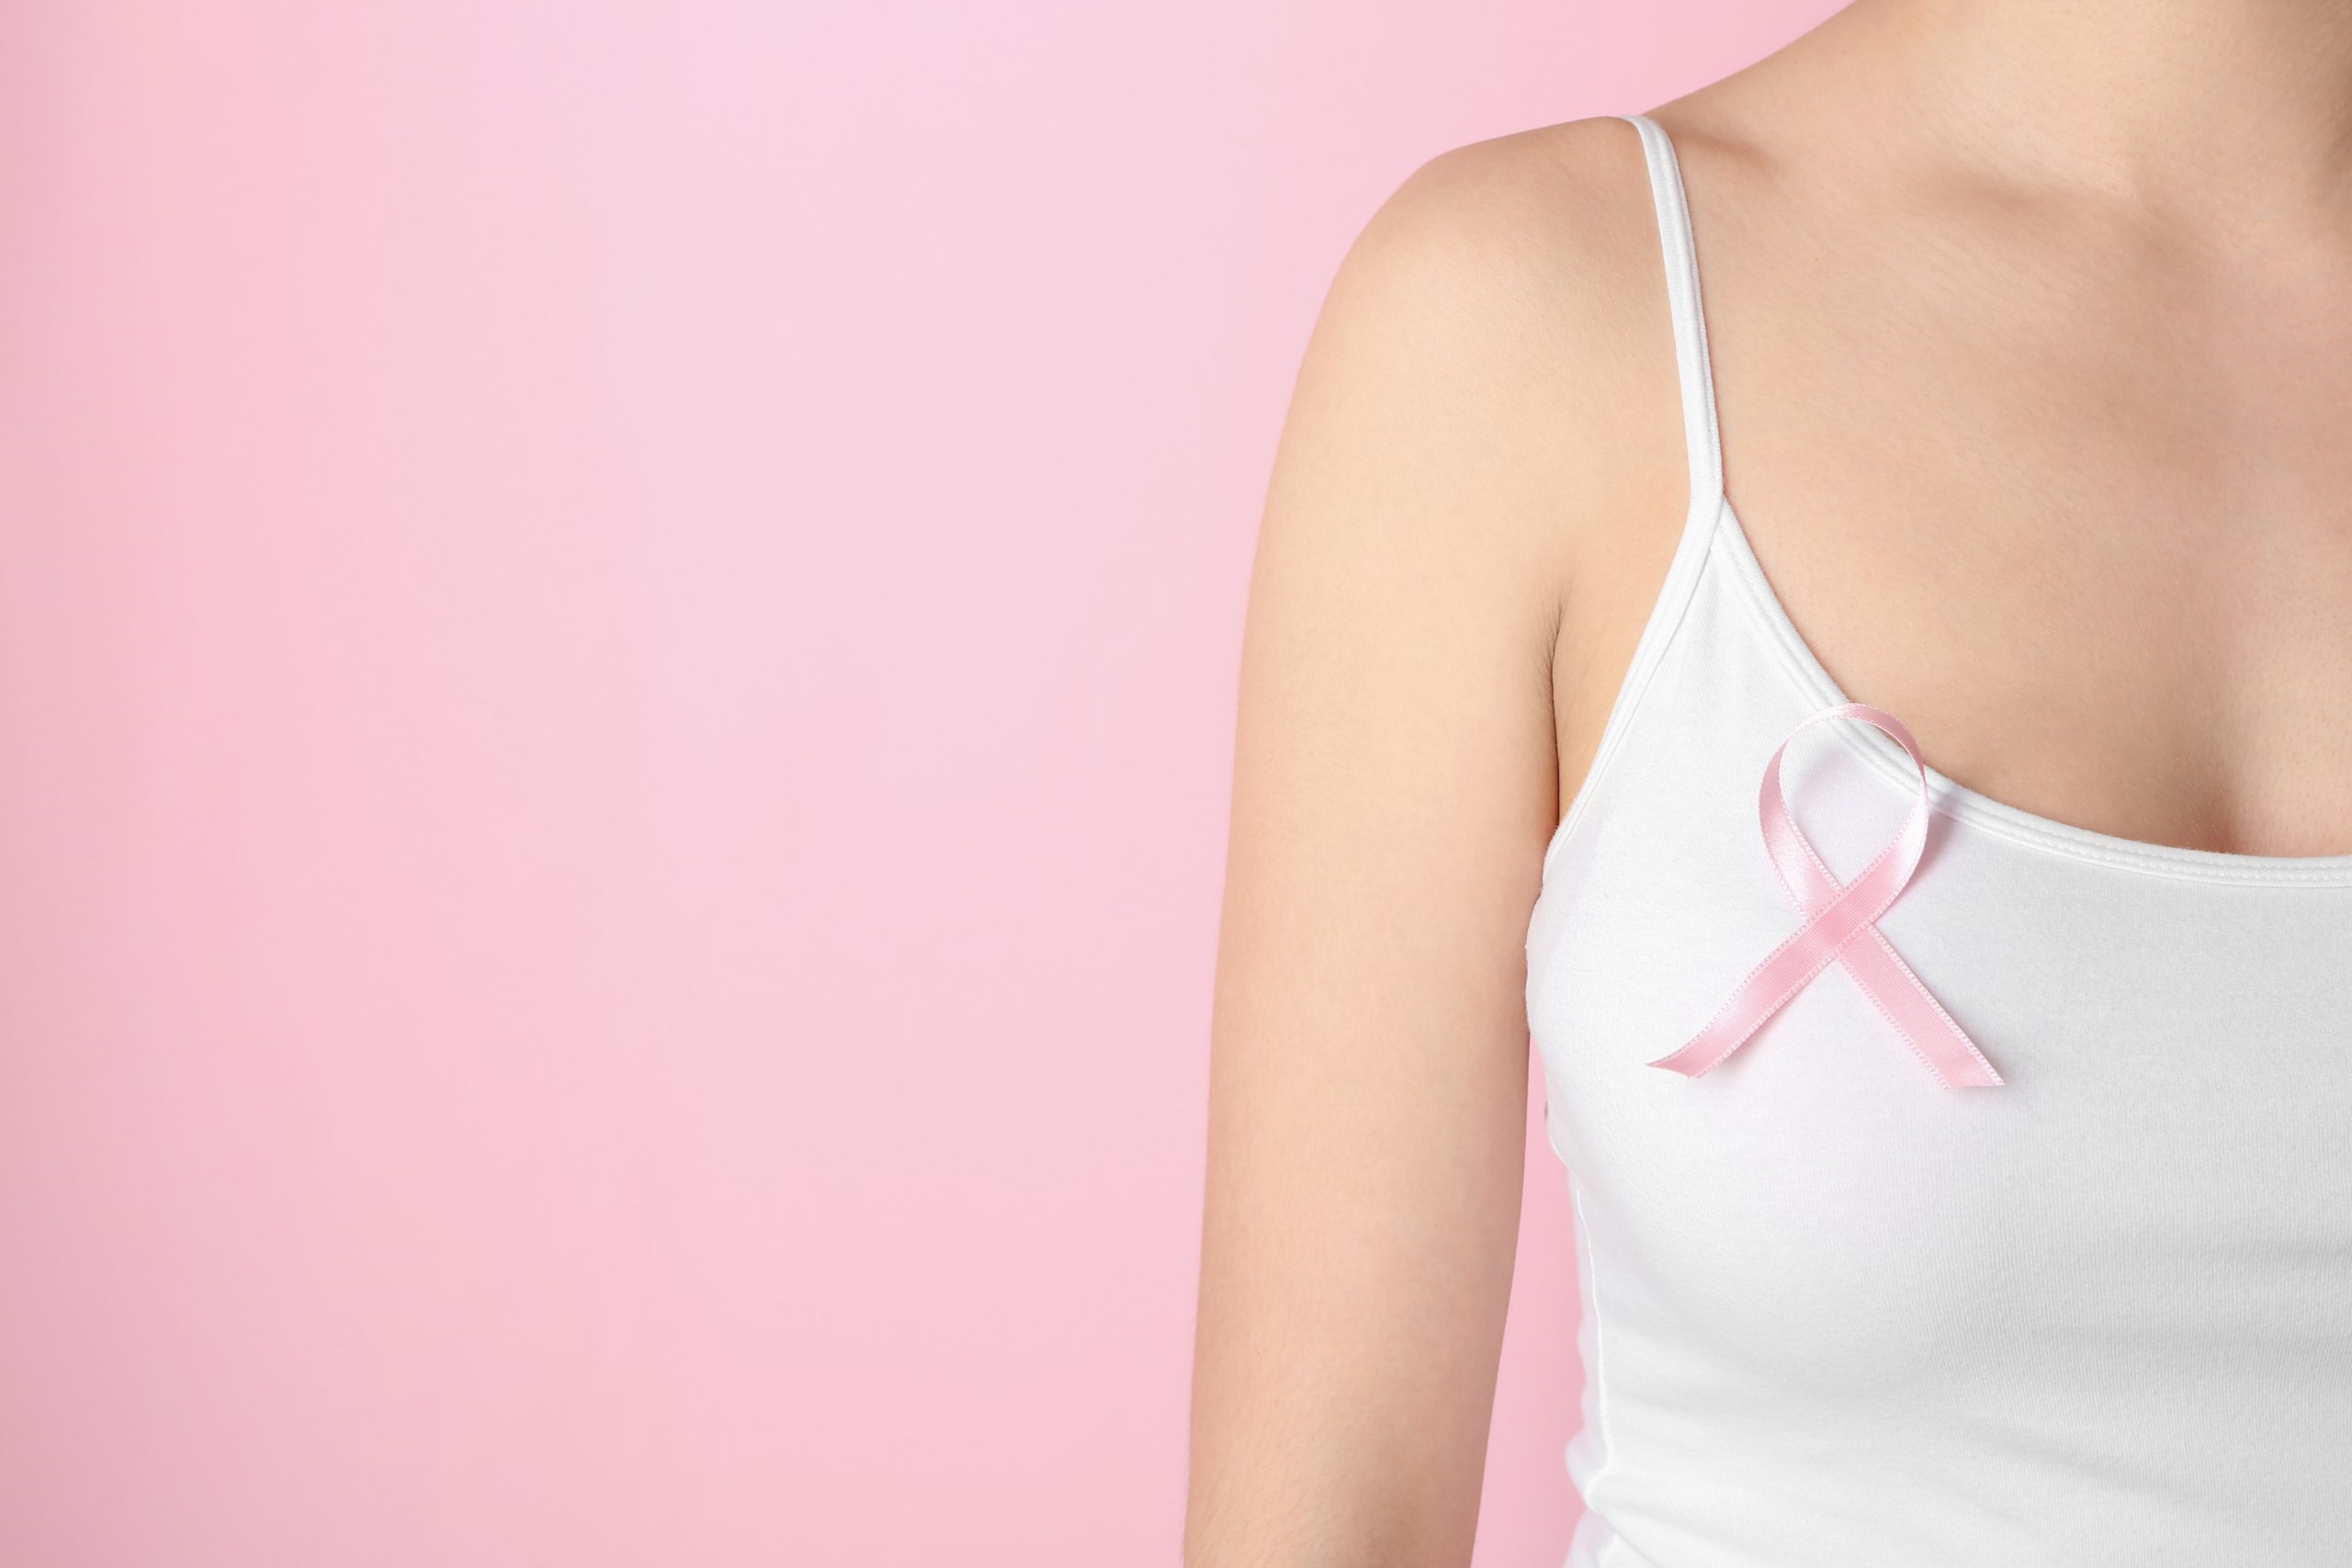 October Q&A: Breast Reconstruction